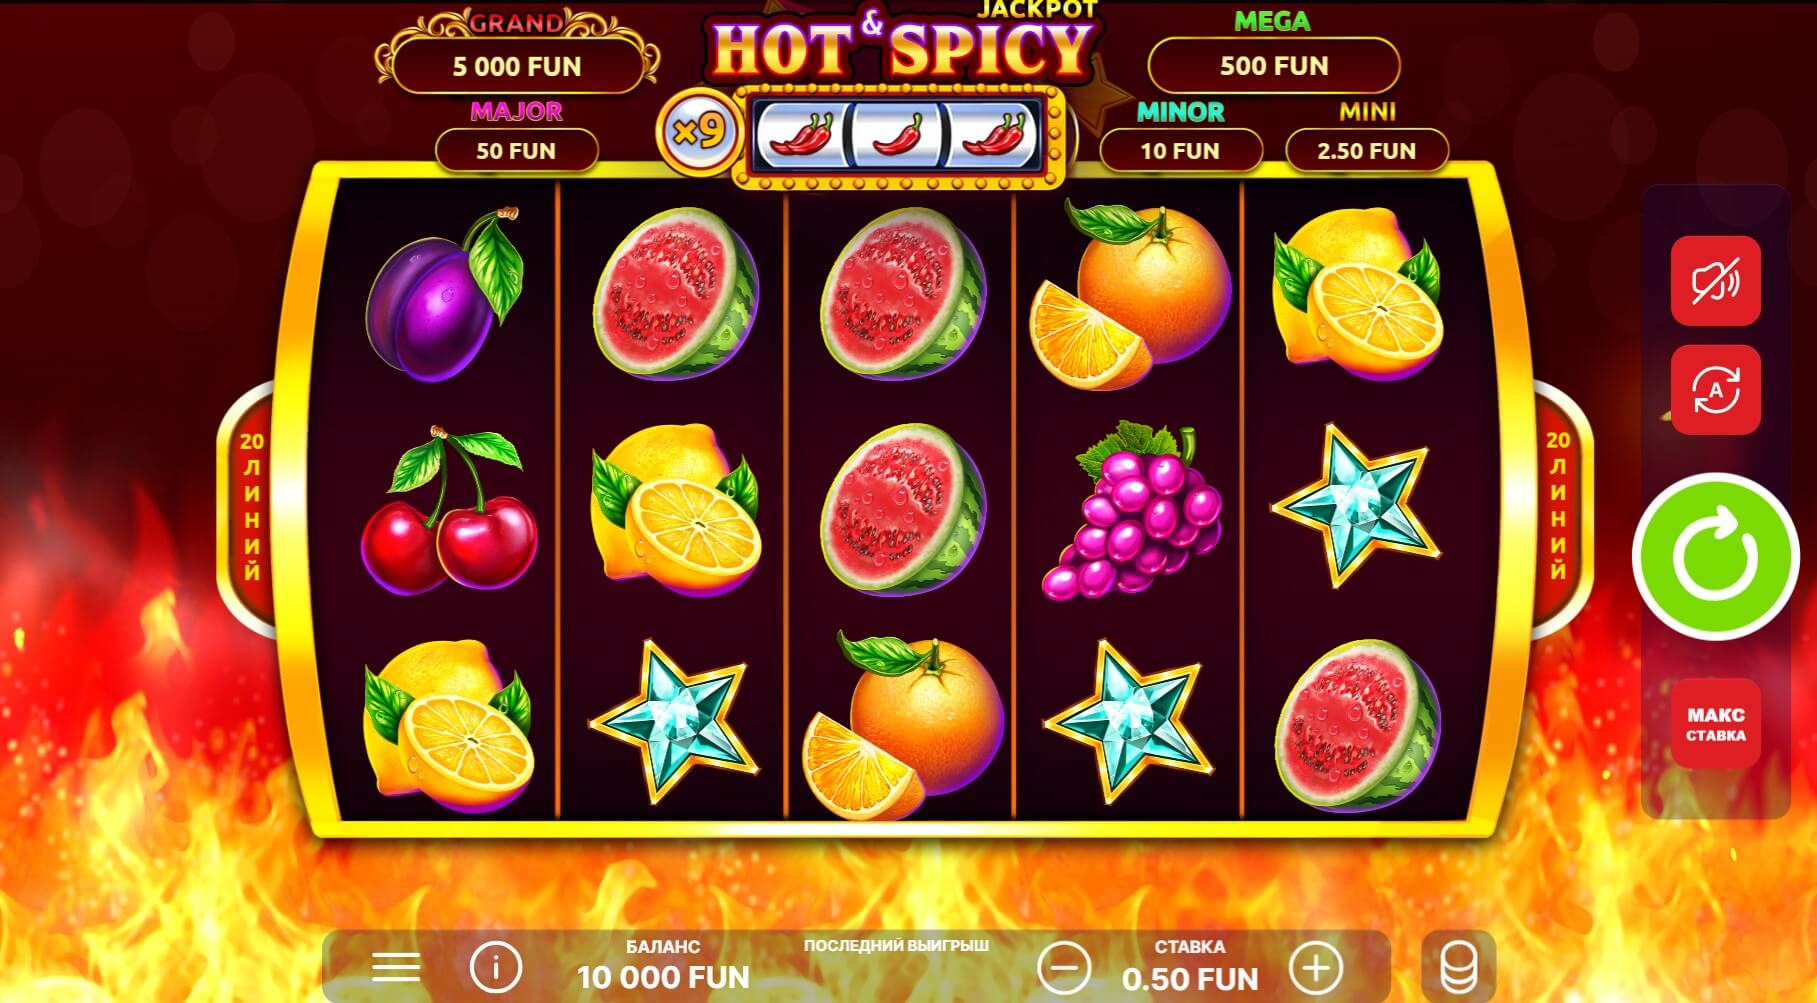 Hot & Spicy Jackpot: Стратегия в игре на огненном колесе